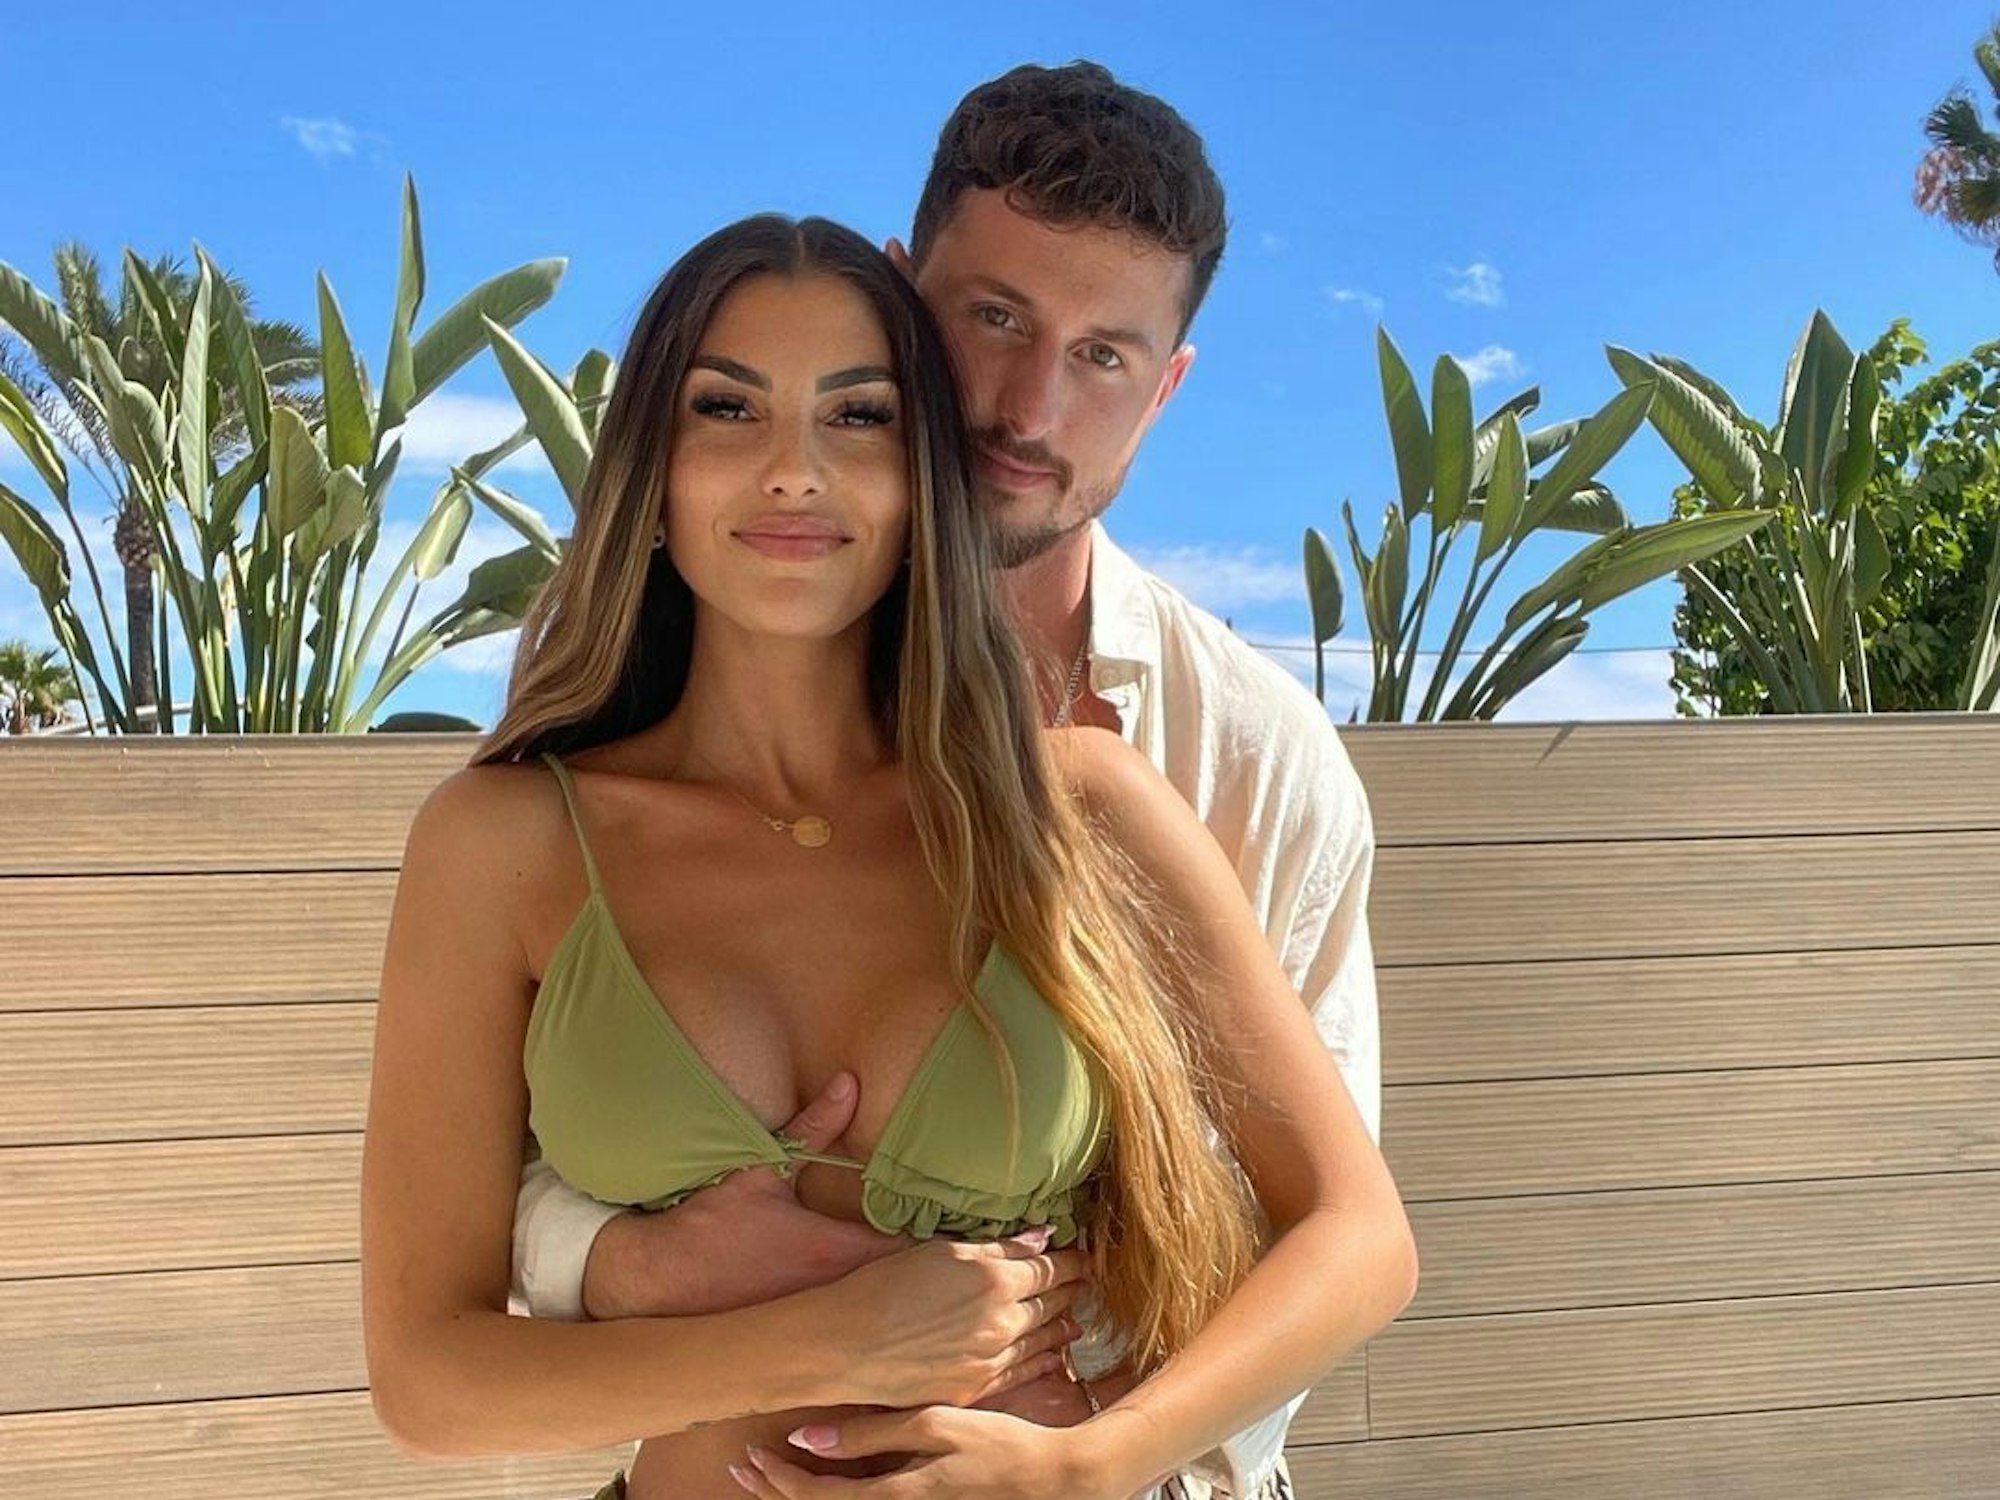 Yeliz Koc und Jannik Kontalis, Instagramfoto von März 2023, blicken in die Kamera und umarmen sich dabei. Yeliz trägt einen grünen Bikini und Jannik ein beiges Hemd.